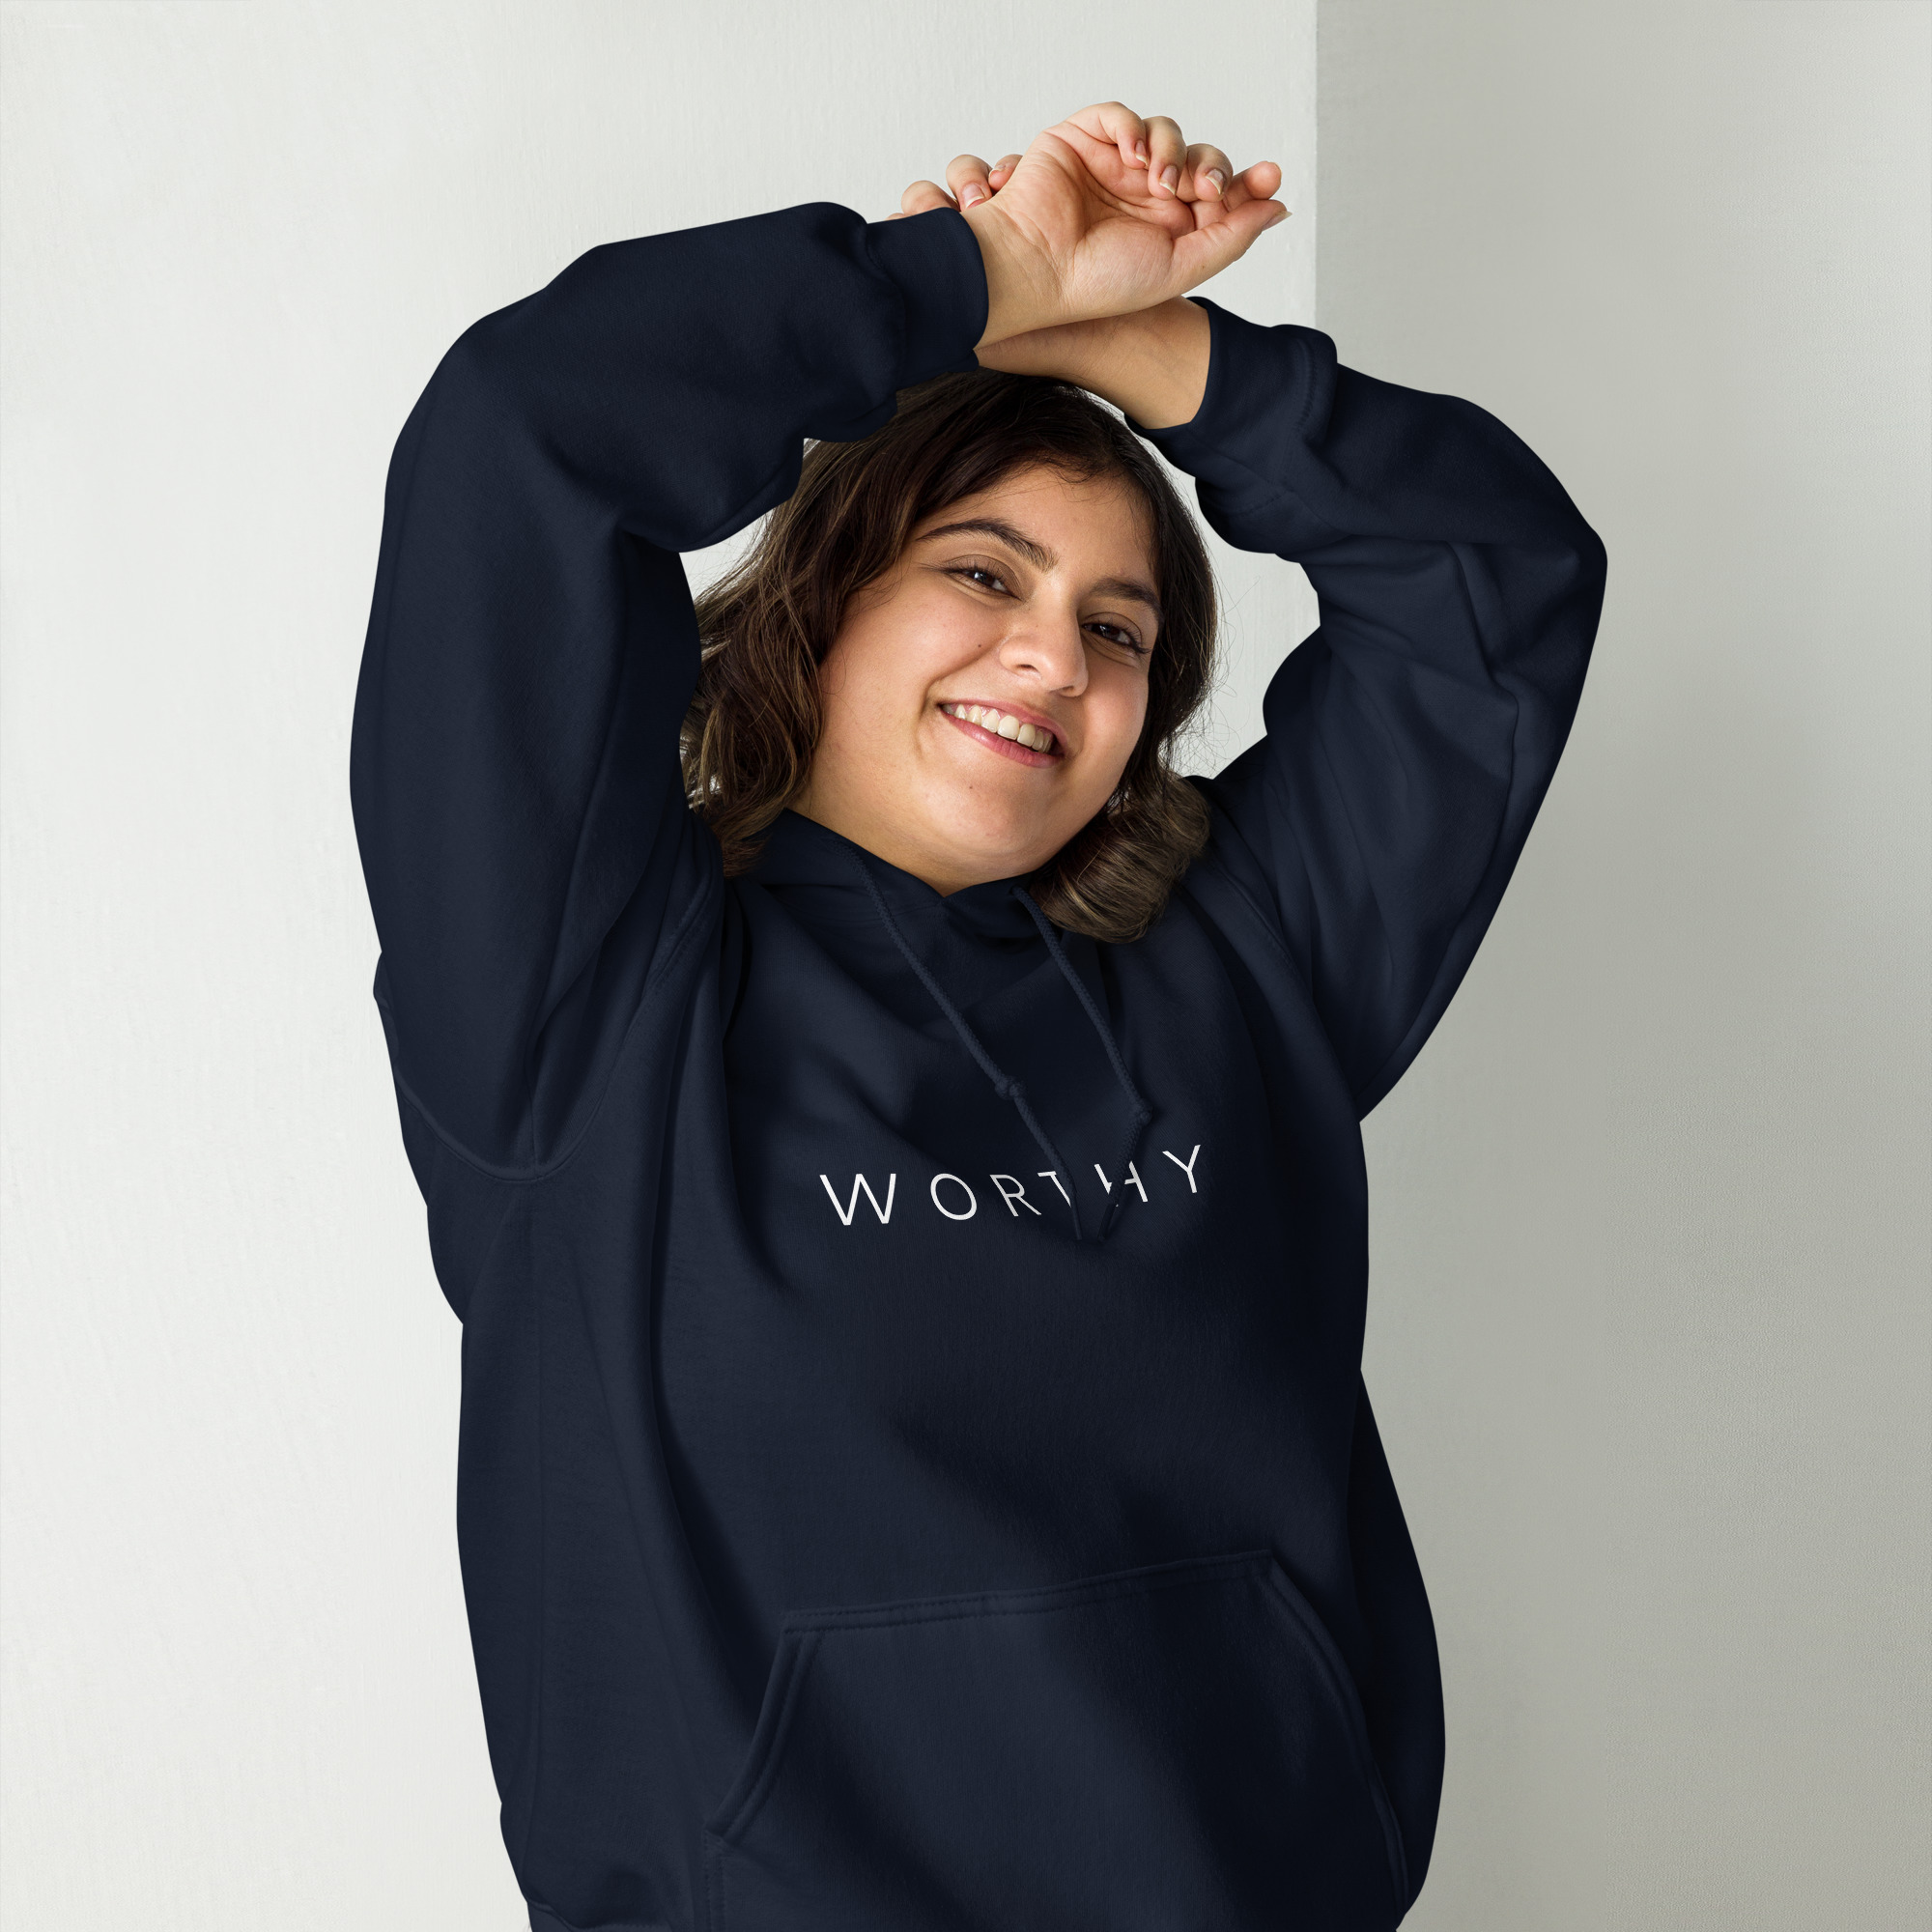 "worthy" women's hoodie